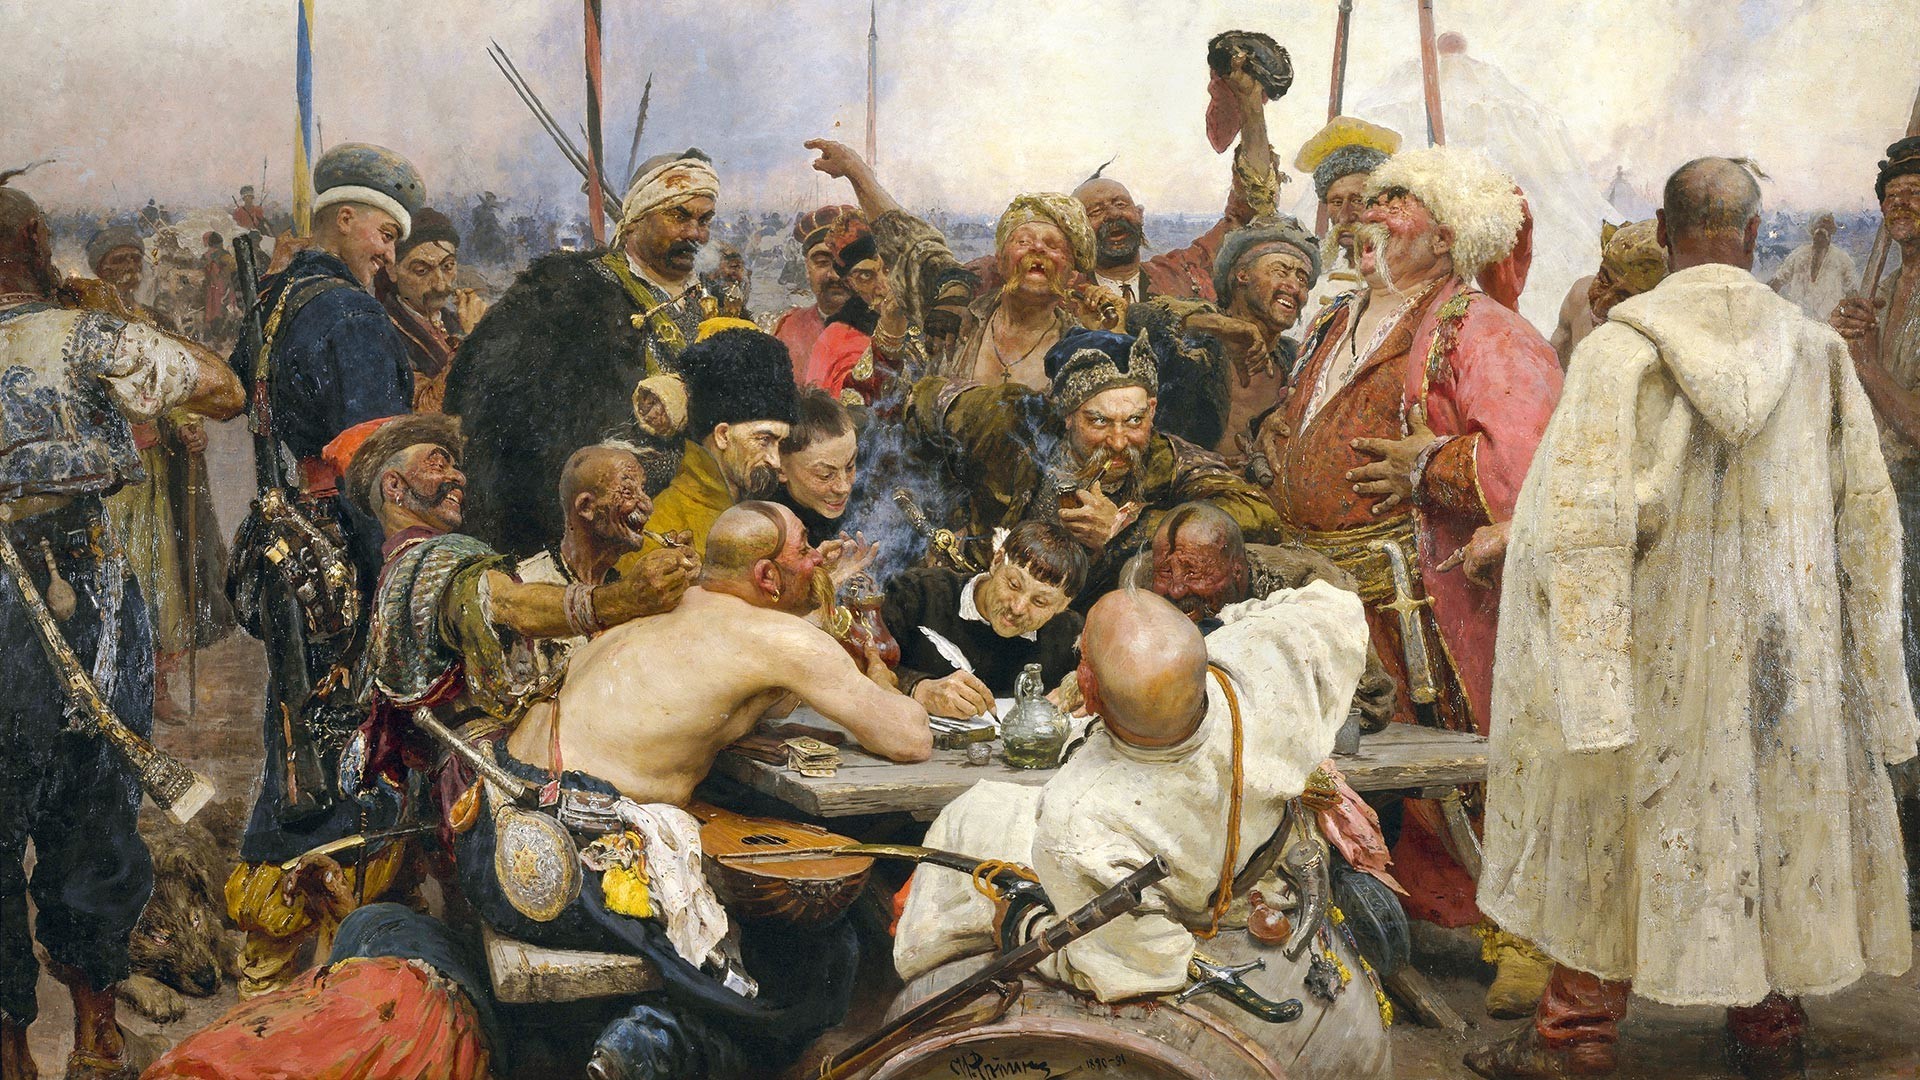 Zaporoški kozaki odgovarjajo osmanskemu sultanu Mehmedu IV., 1880-1891, naslikal Ilja Repin (1844-1930)

Ilja Repin